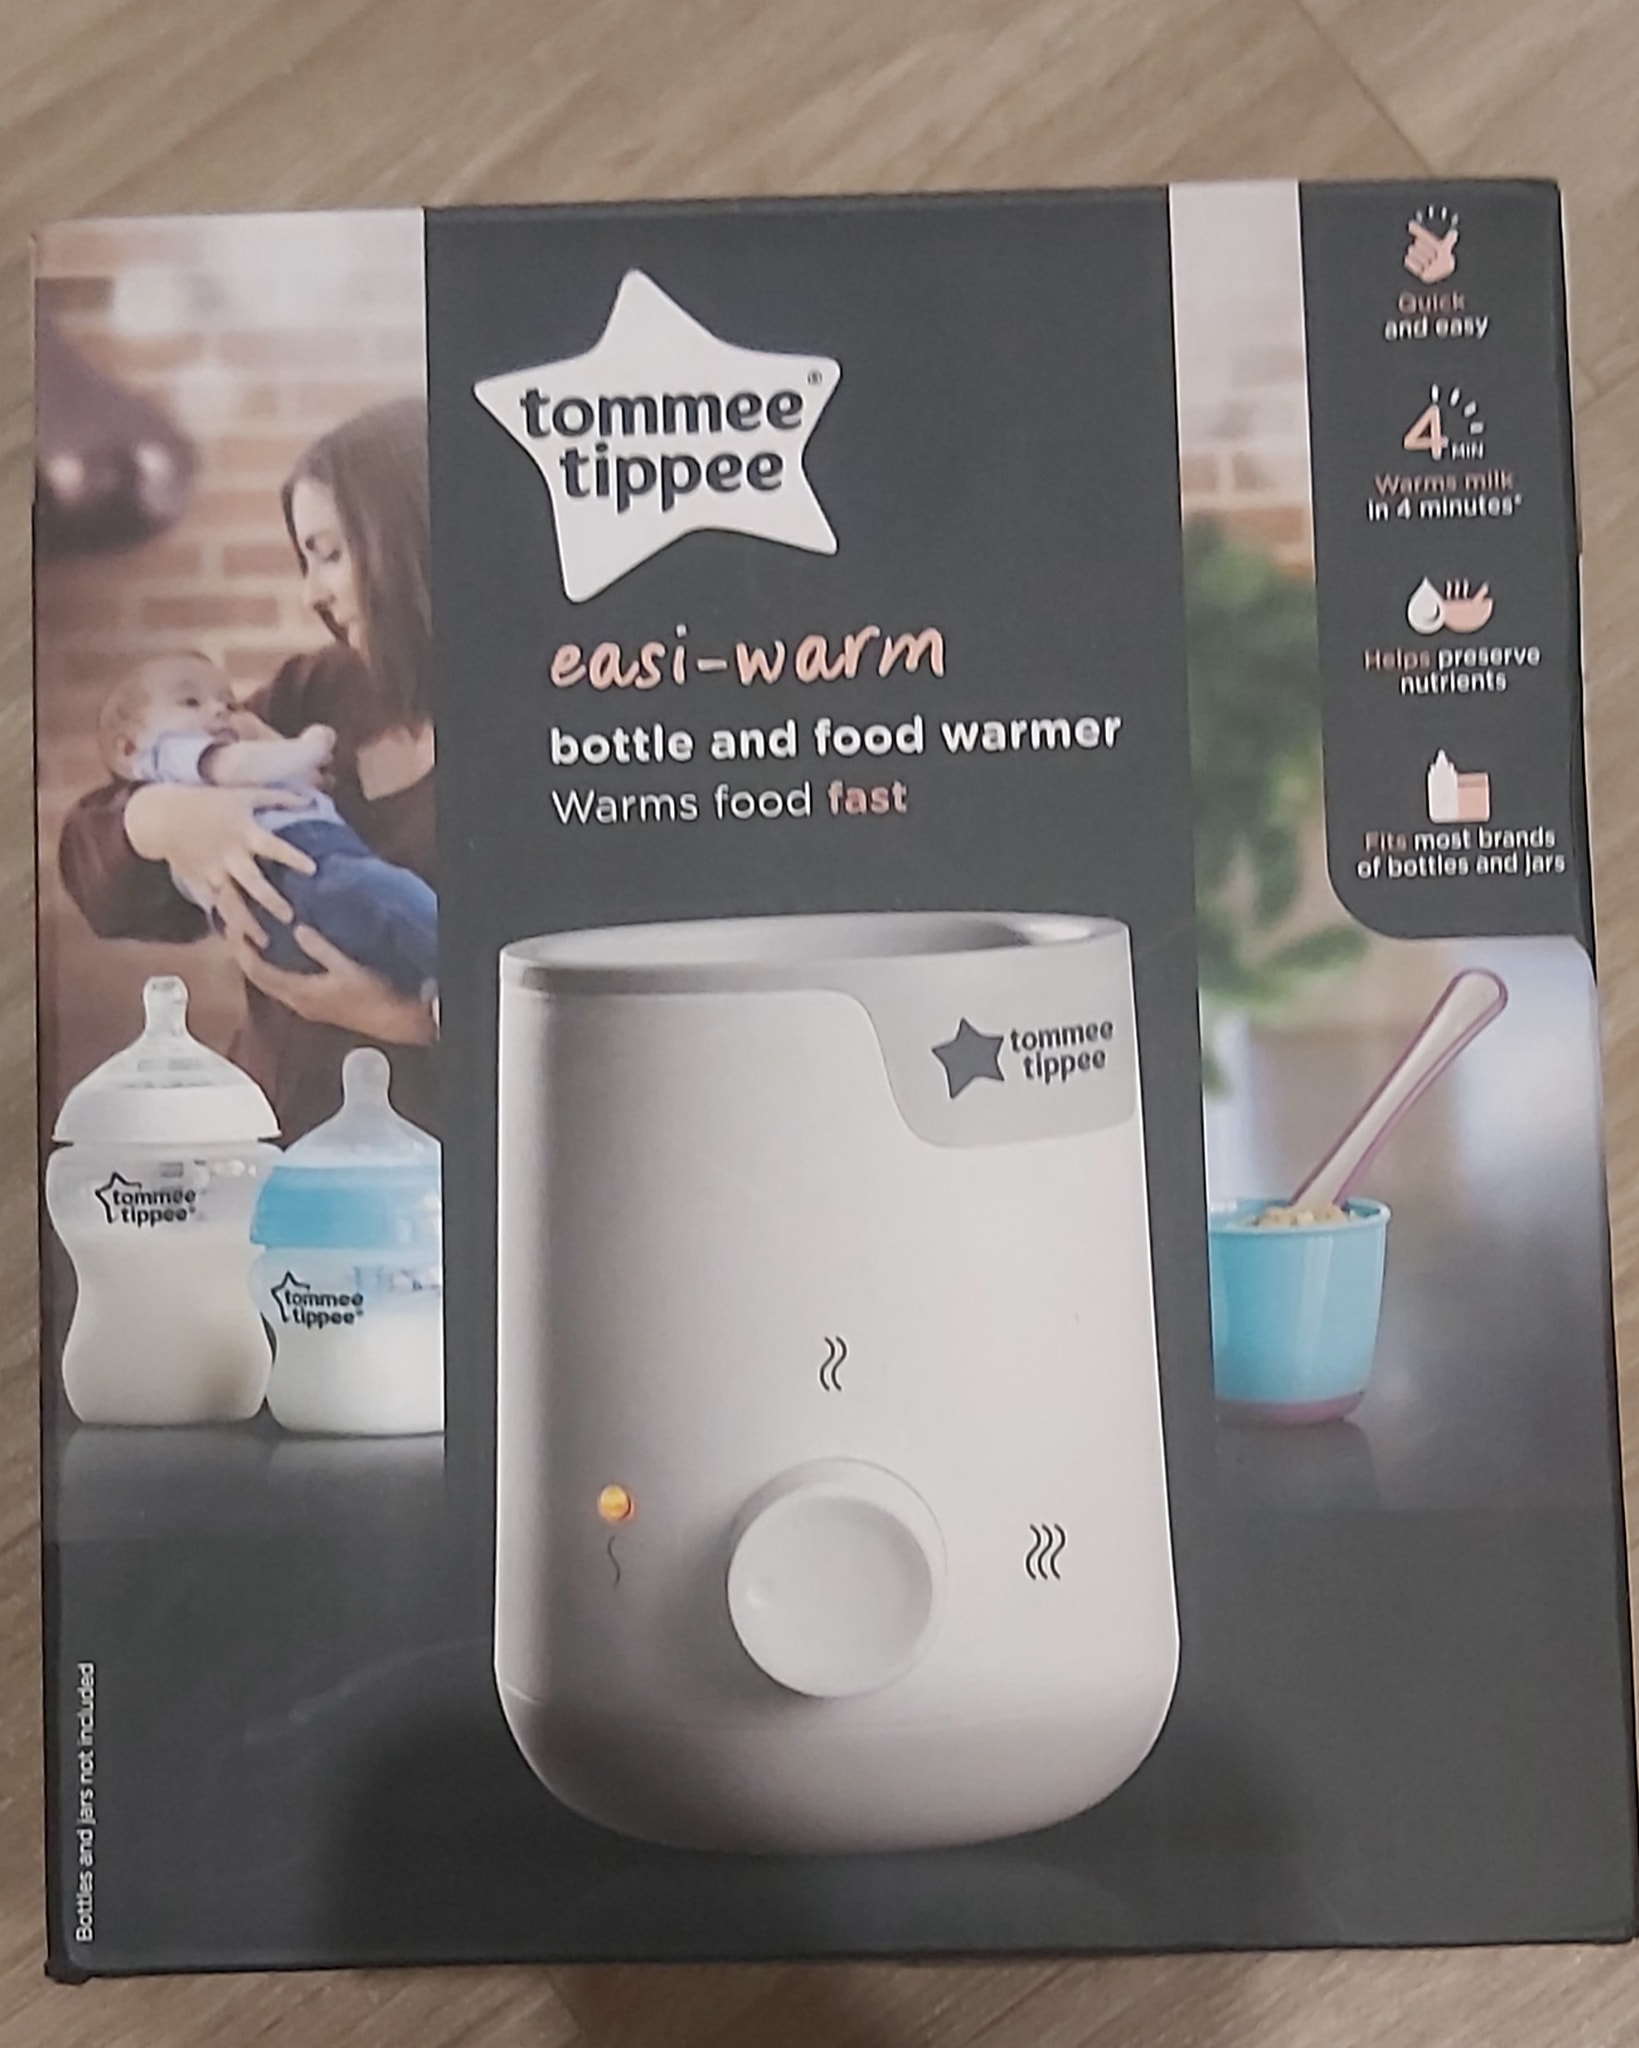 Máy hâm nóng bình sữa và thức ăn hiệu Tommee tippee Easi